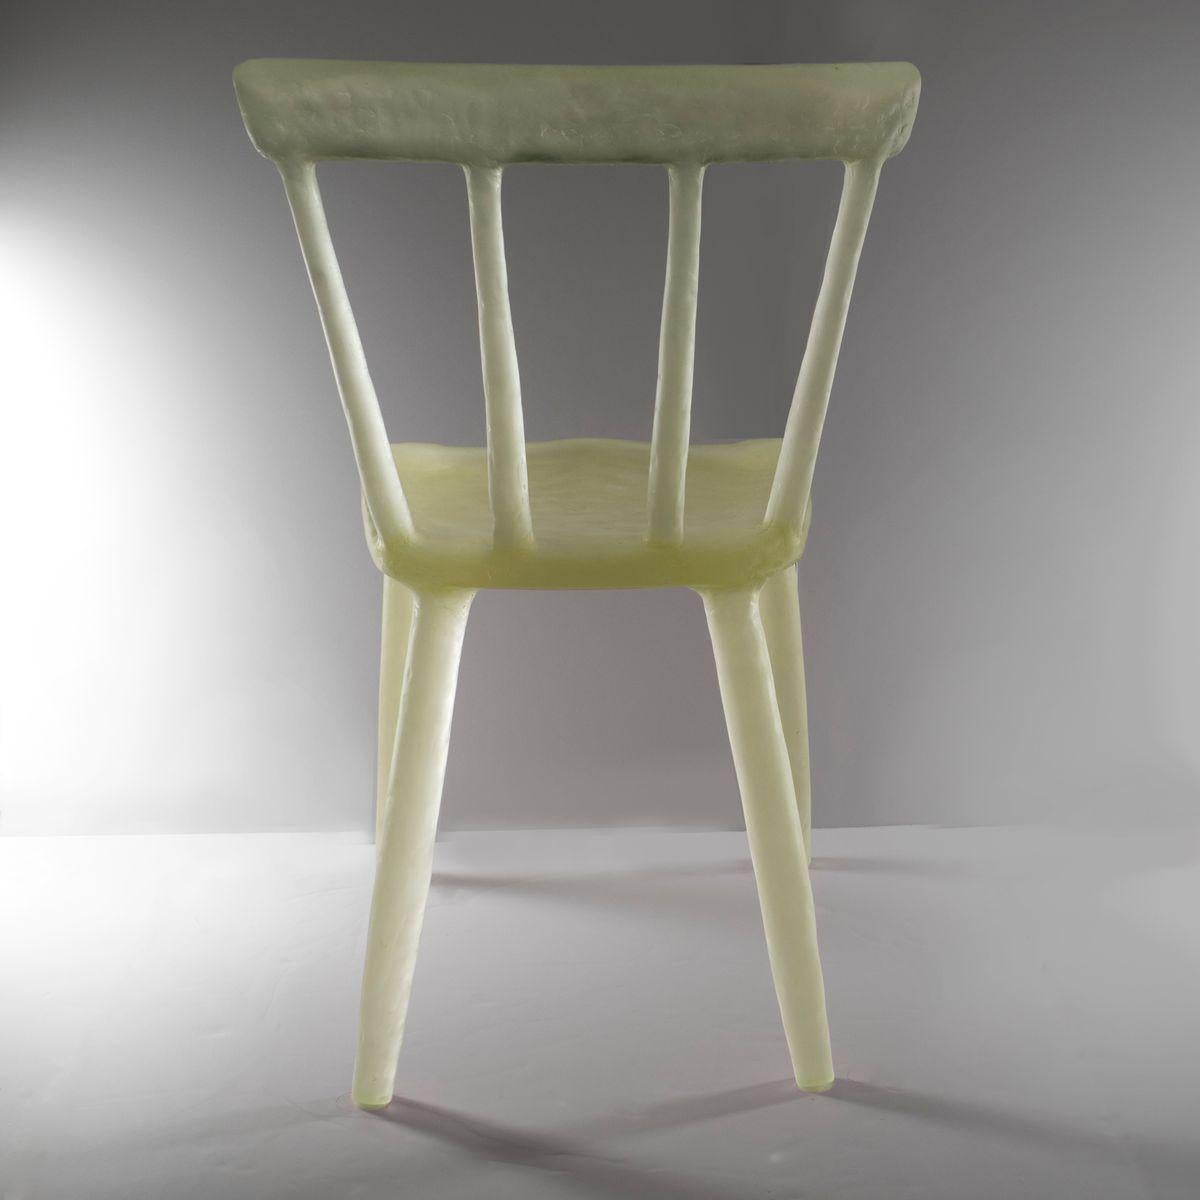 Die transluzenten und skurrilen Stühle der New Yorker Designerin Kim Markel werden in Handarbeit aus einer Vielzahl von recycelten Kunststoffen hergestellt, sowohl aus Duroplast als auch aus Thermoplast. Eine spezielle Mischung der Kunststoffe wird